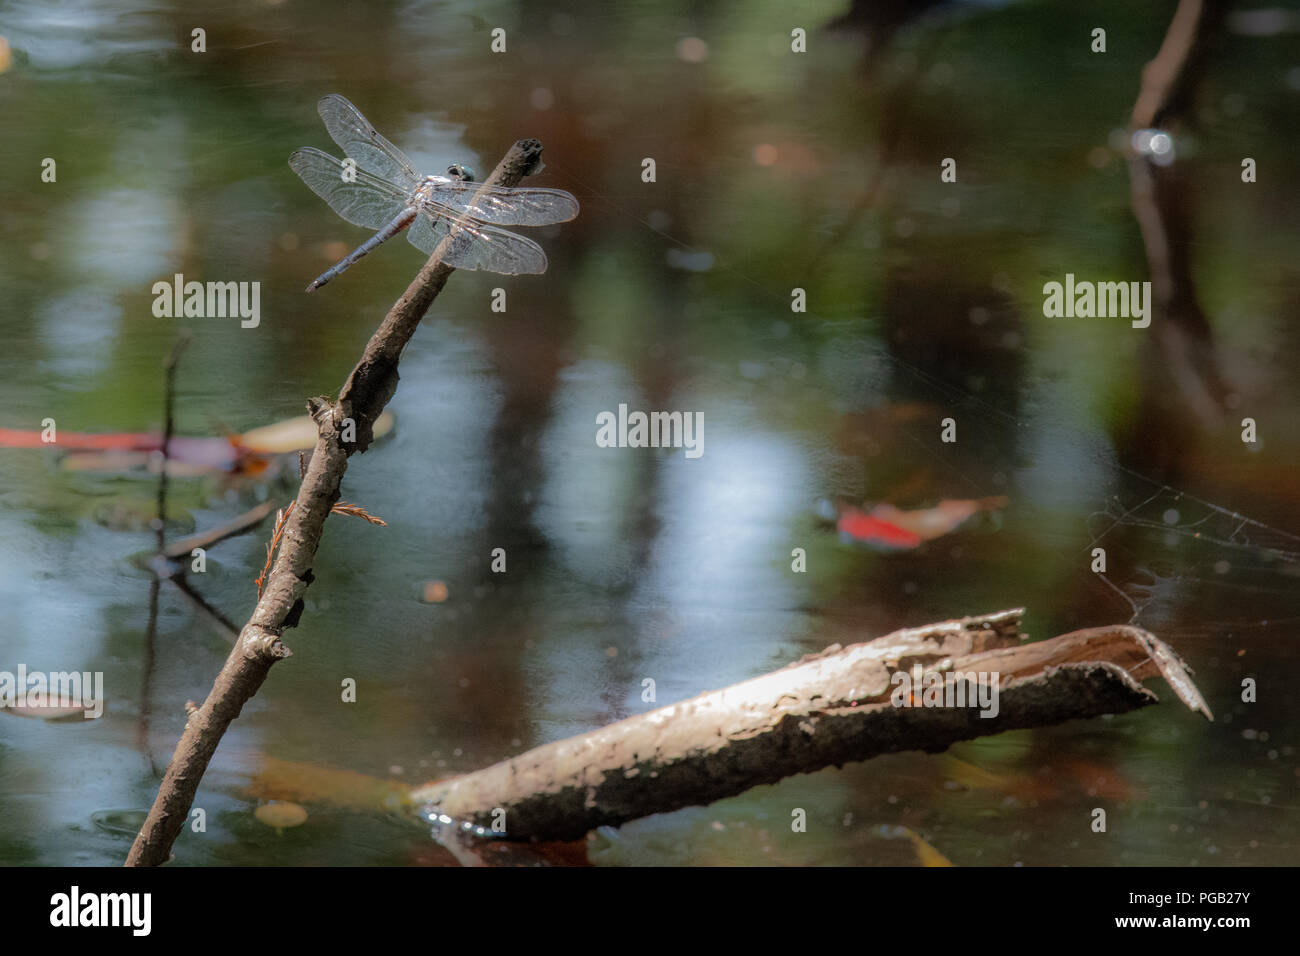 Una libellula poggia su un bastone in una bella palude nella Carolina del Nord e Stati Uniti - ancora acqua salmastra con inizio di caduta foglie in background Foto Stock